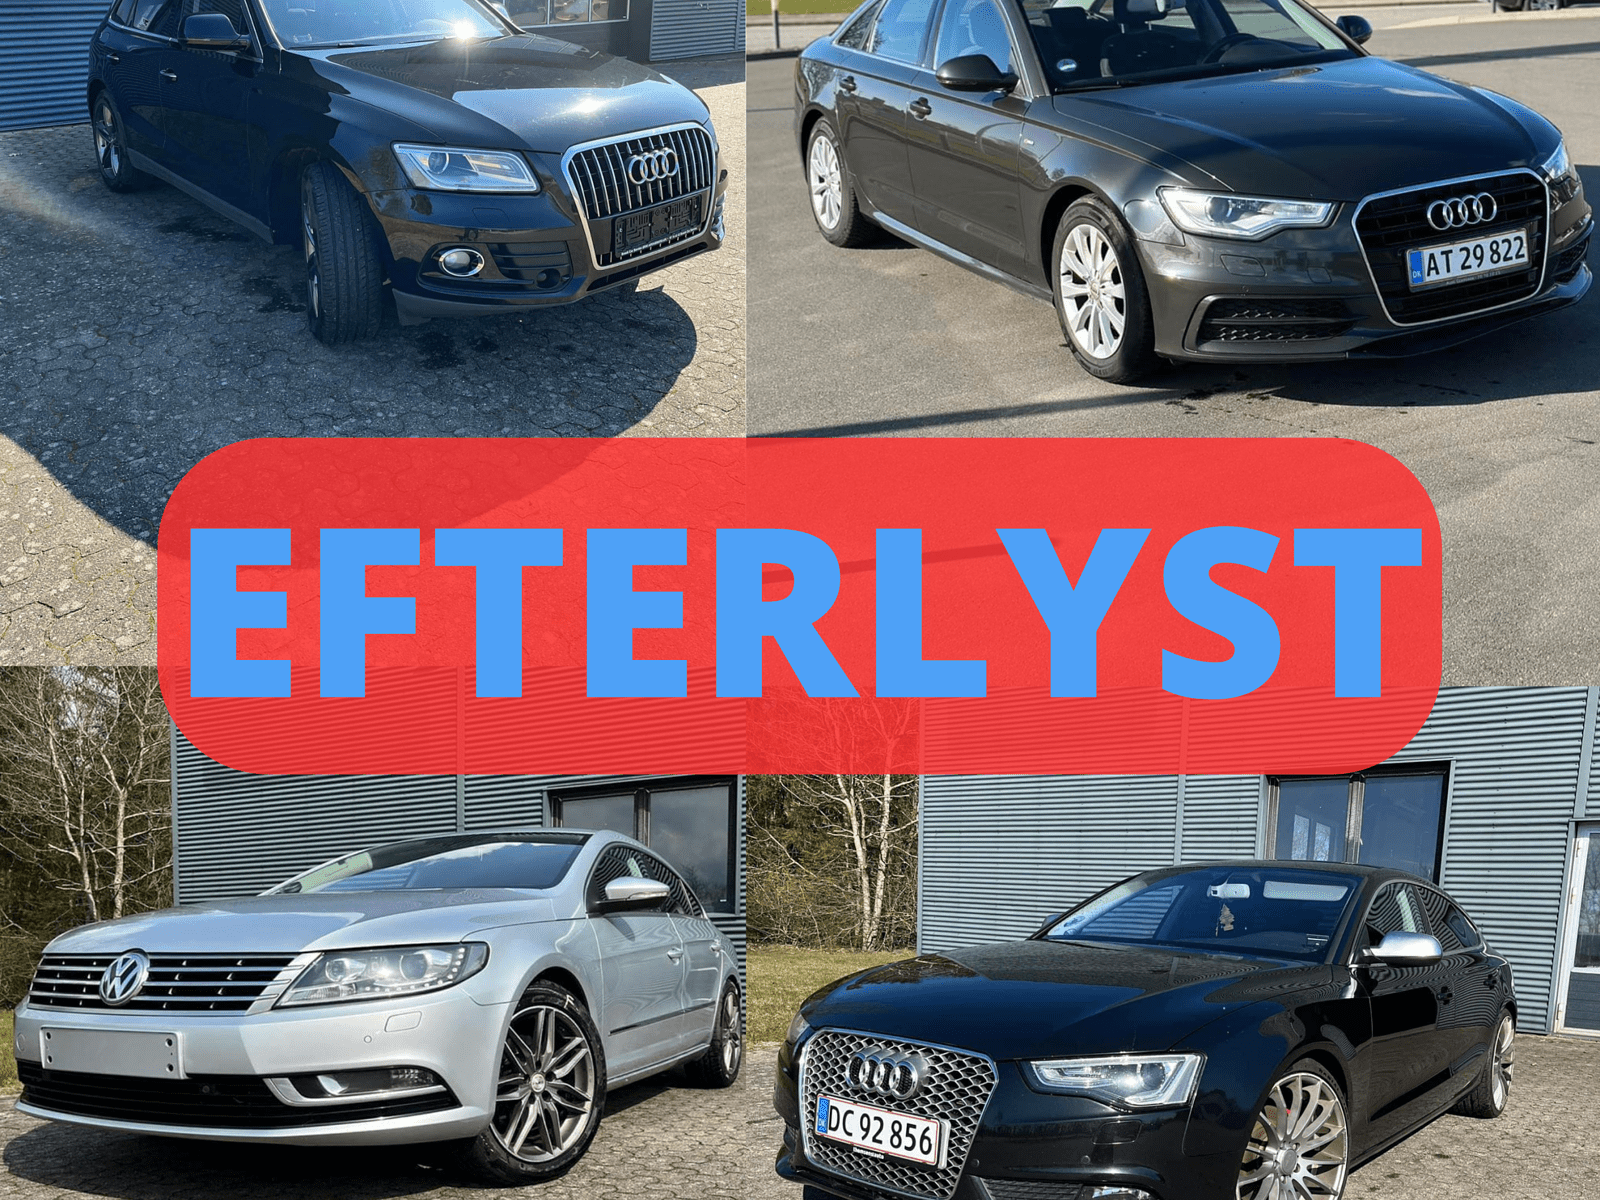 EFTERLYST: Hjælp politiet med at finde stjålne Audi- og Volkswagen-biler